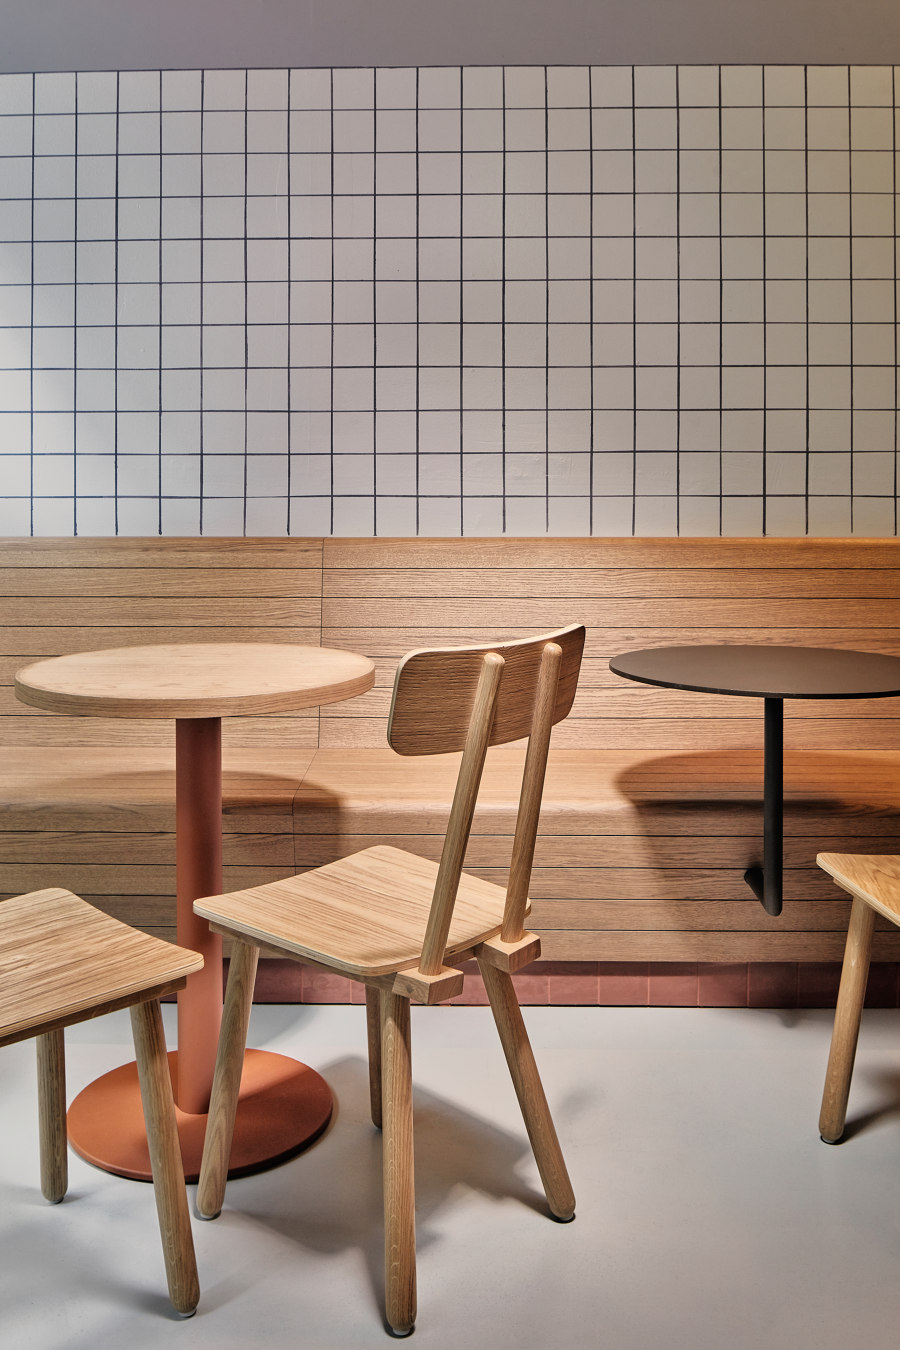 Foodhallen Den Haag by Studio Modijefsky | Restaurant interiors